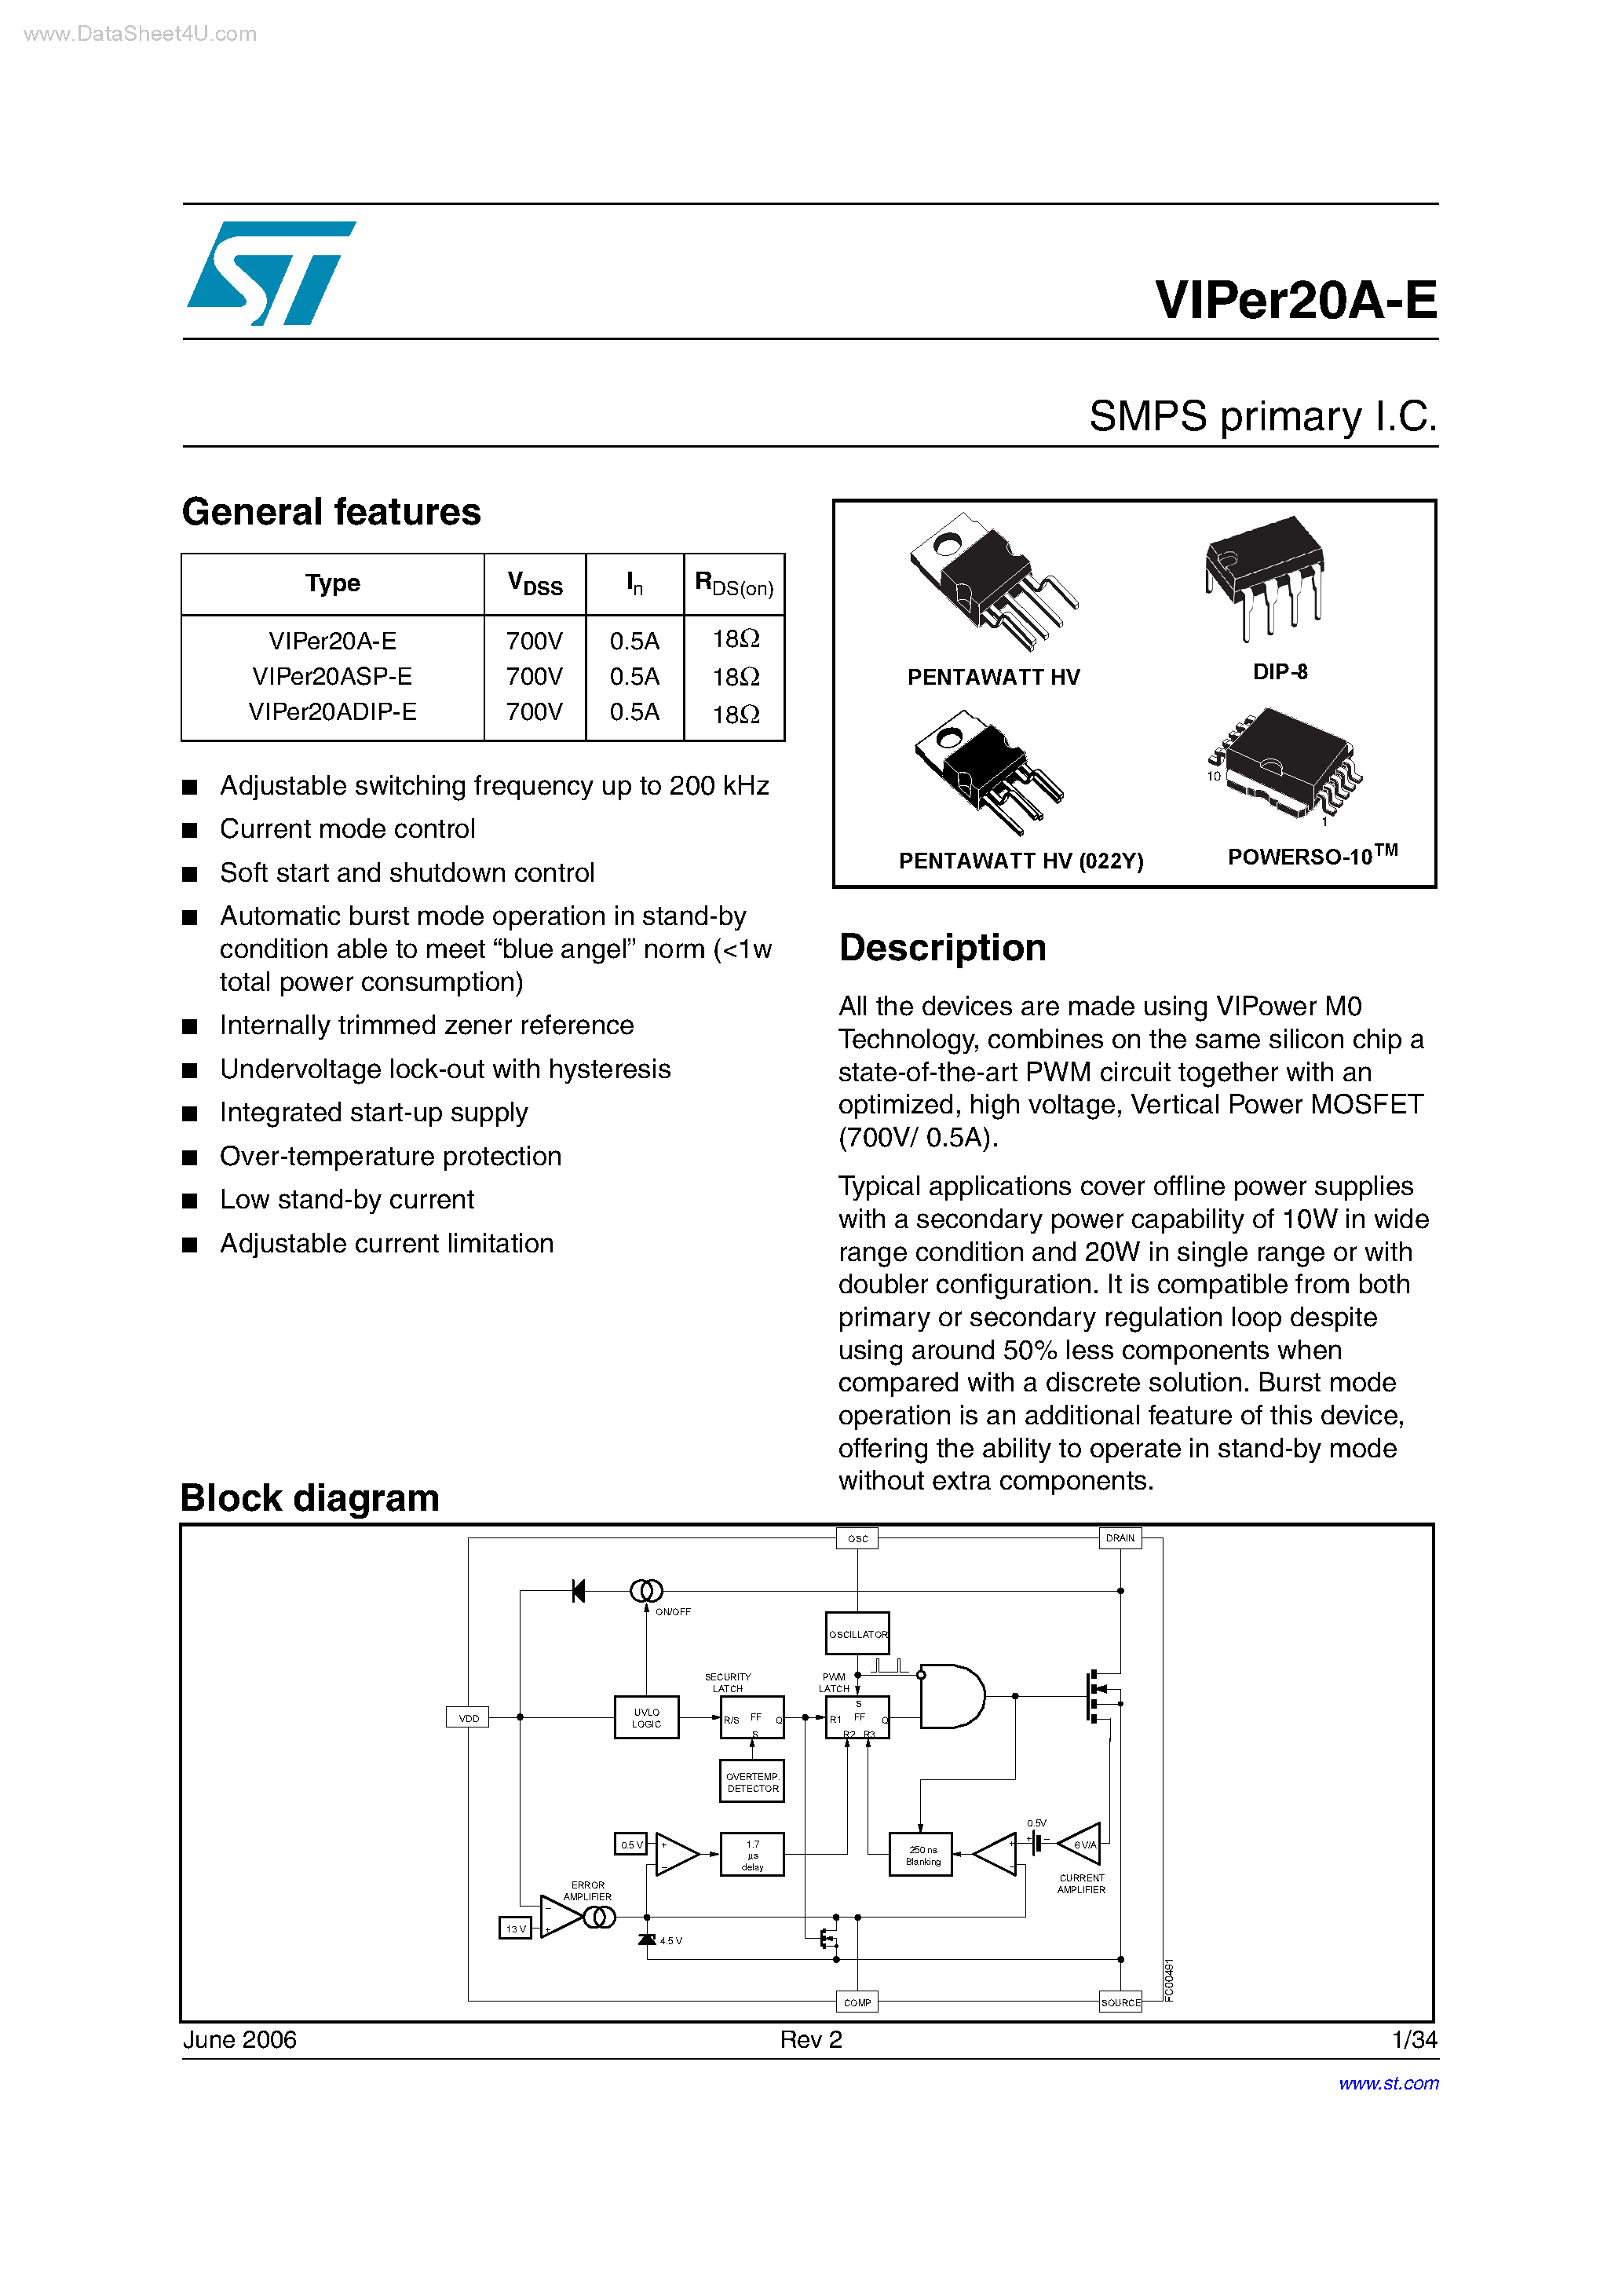 Даташит VIPER20A-E - SMPS primary IC страница 1